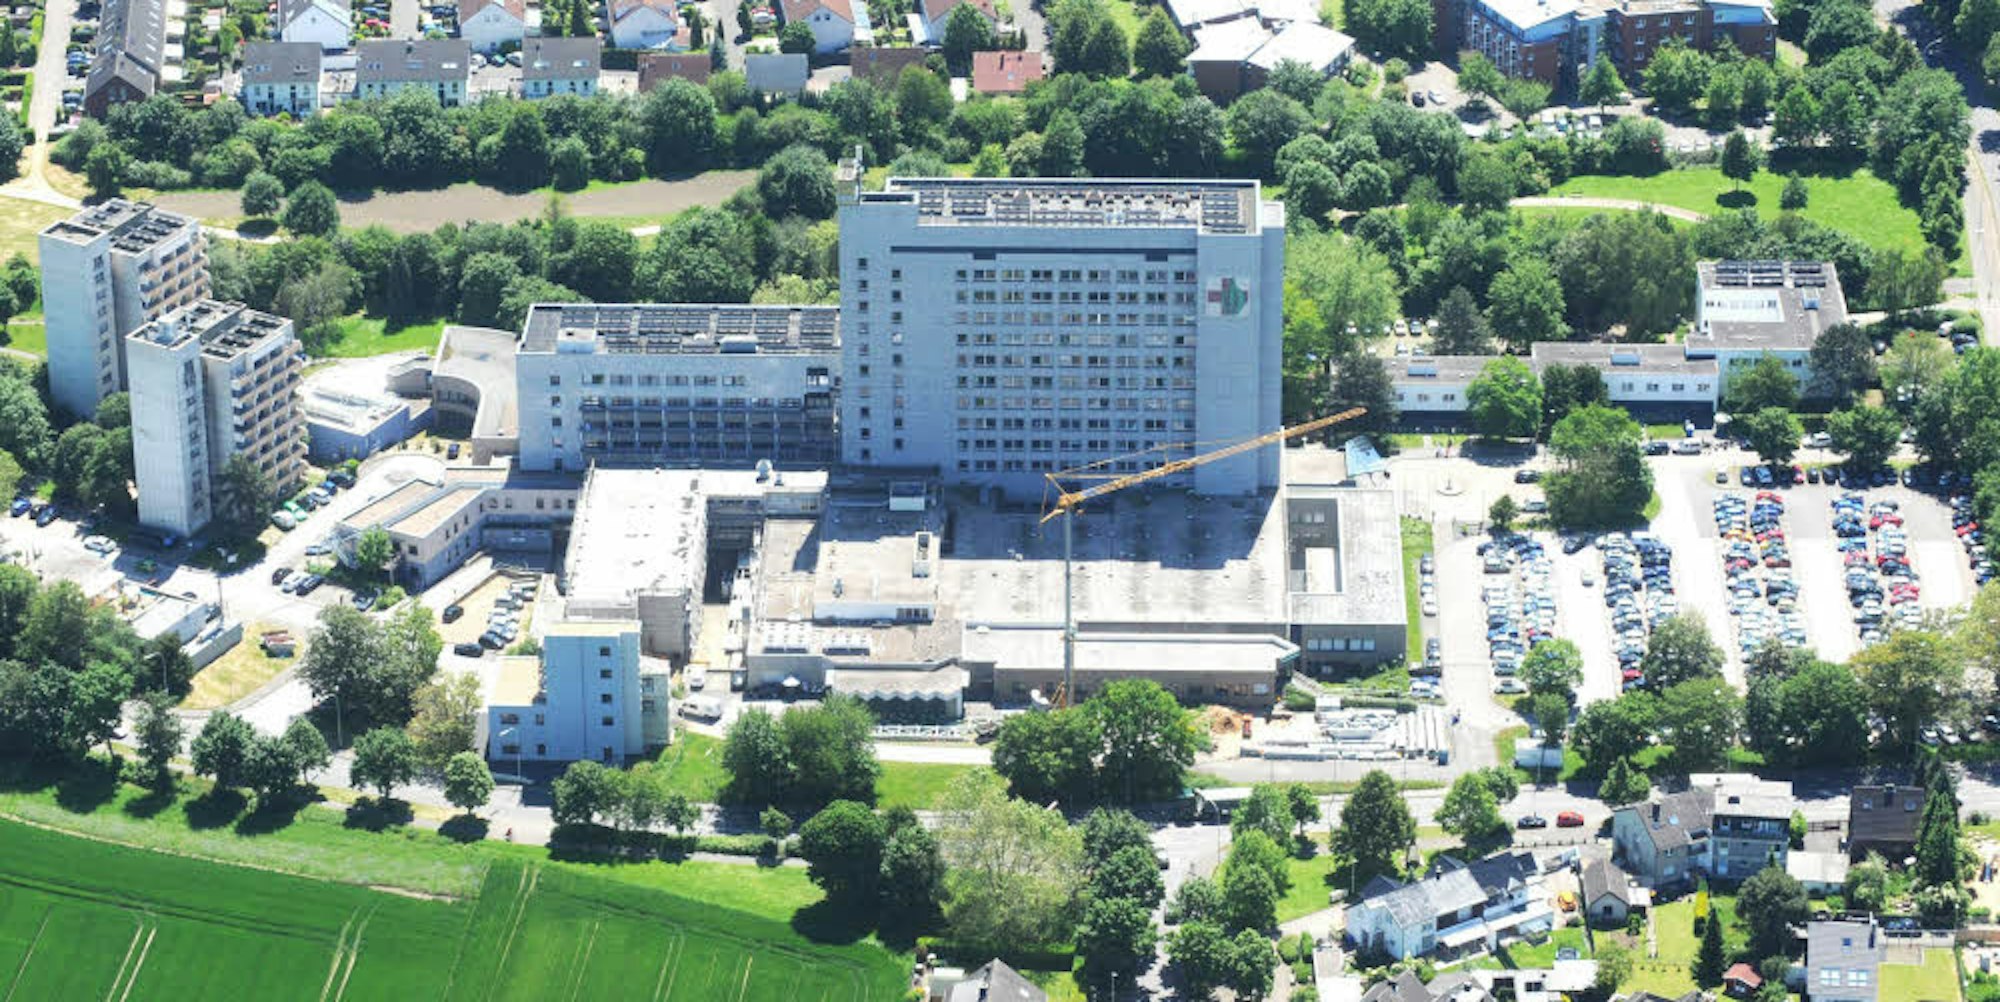 Kräftig ausgebaut werden müsste das St.-Katharinen-Hospital in Frechen nach dem Ergebnis der Studie.